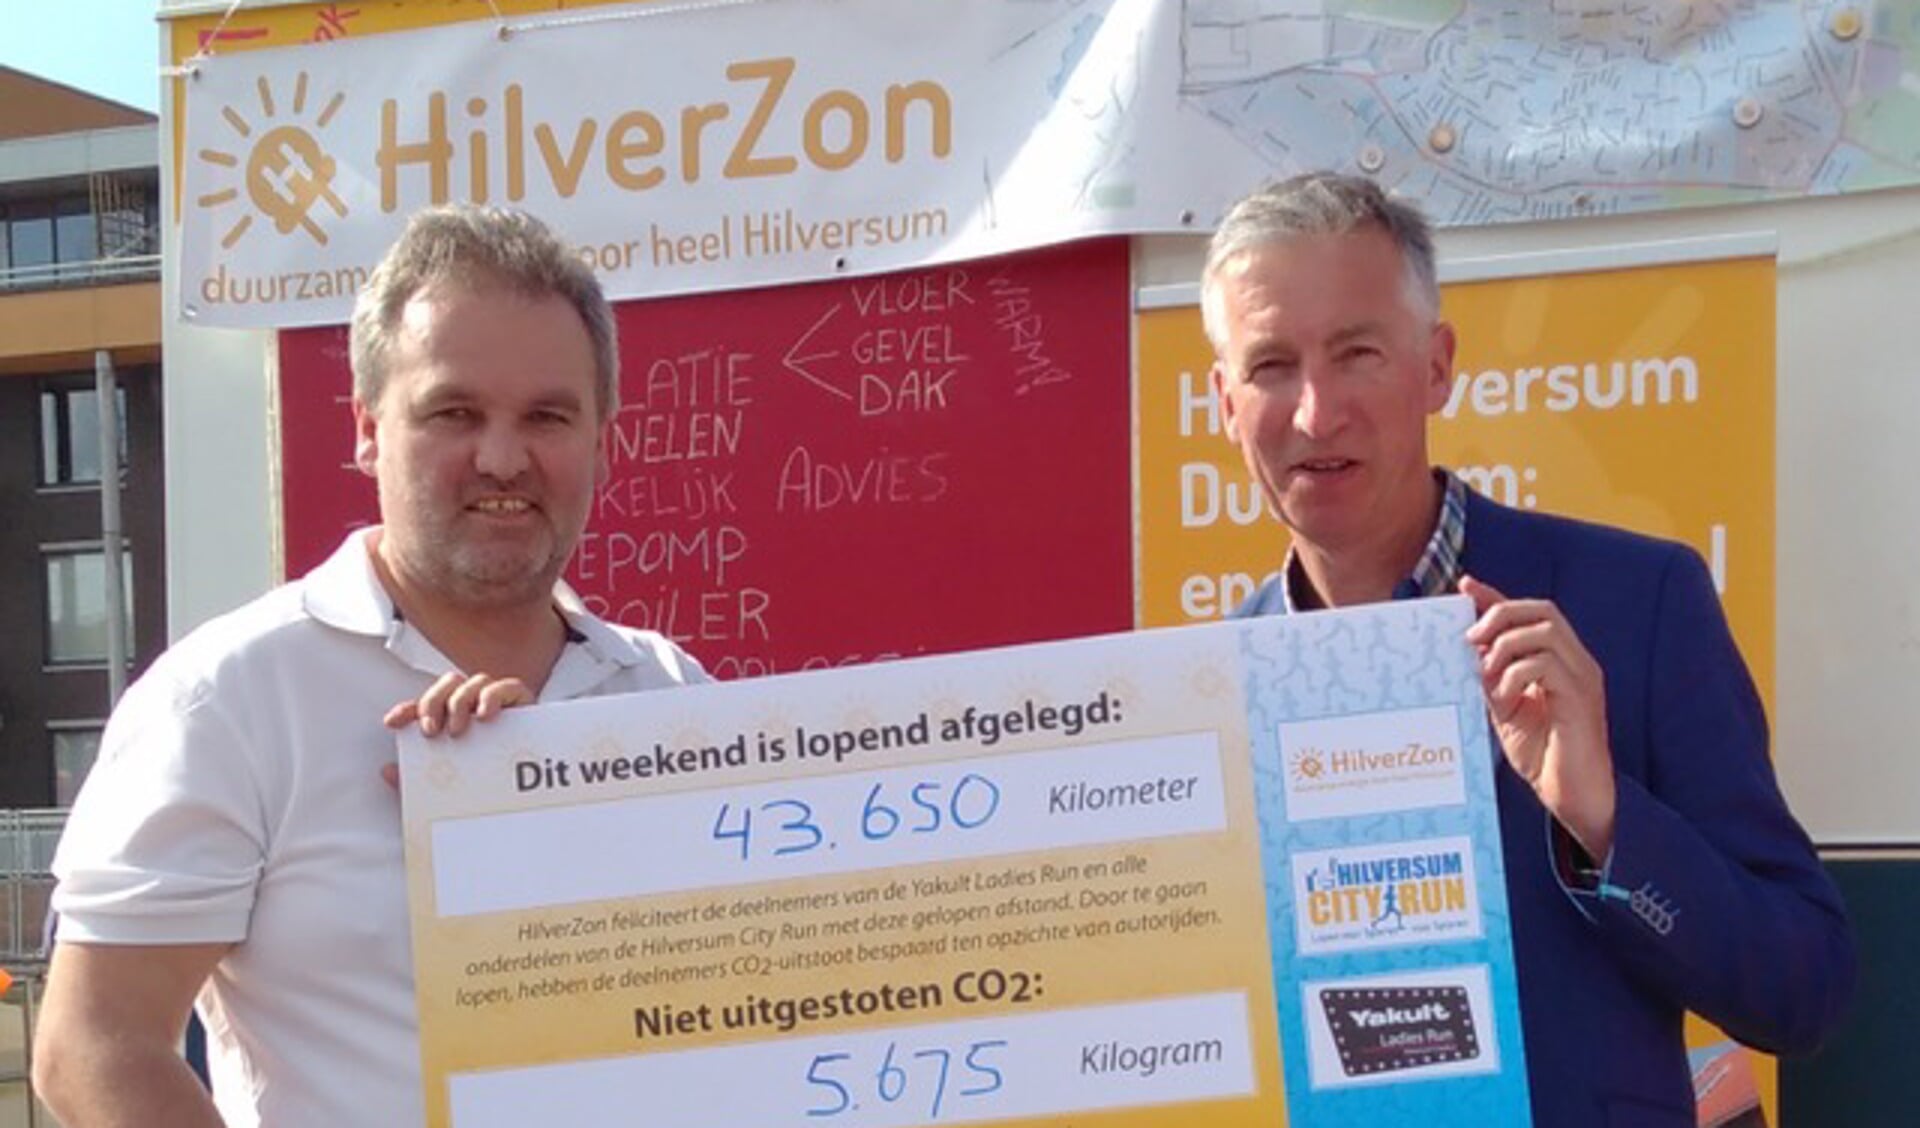 HilverZon is al volop actief op het gebied van duurzaamheid. De gemeente wil nu meer ideeën en initiatieven van inwoners.